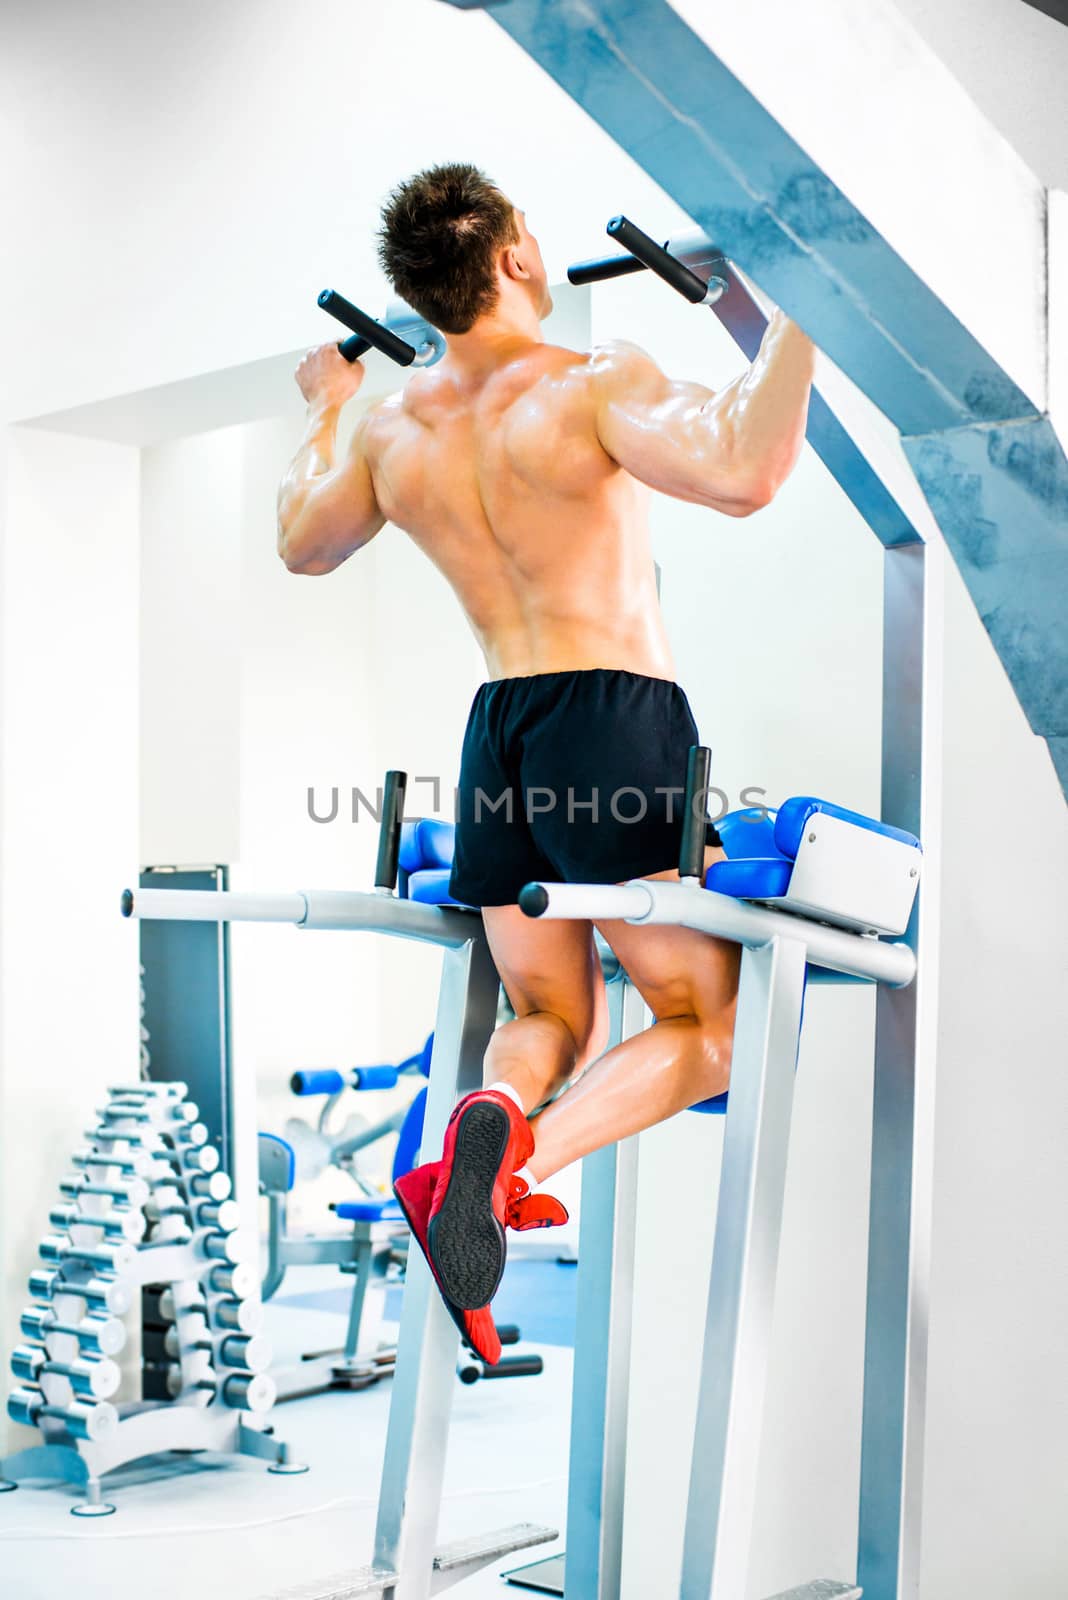 bodybuilder doing exercises on the horizontal bar